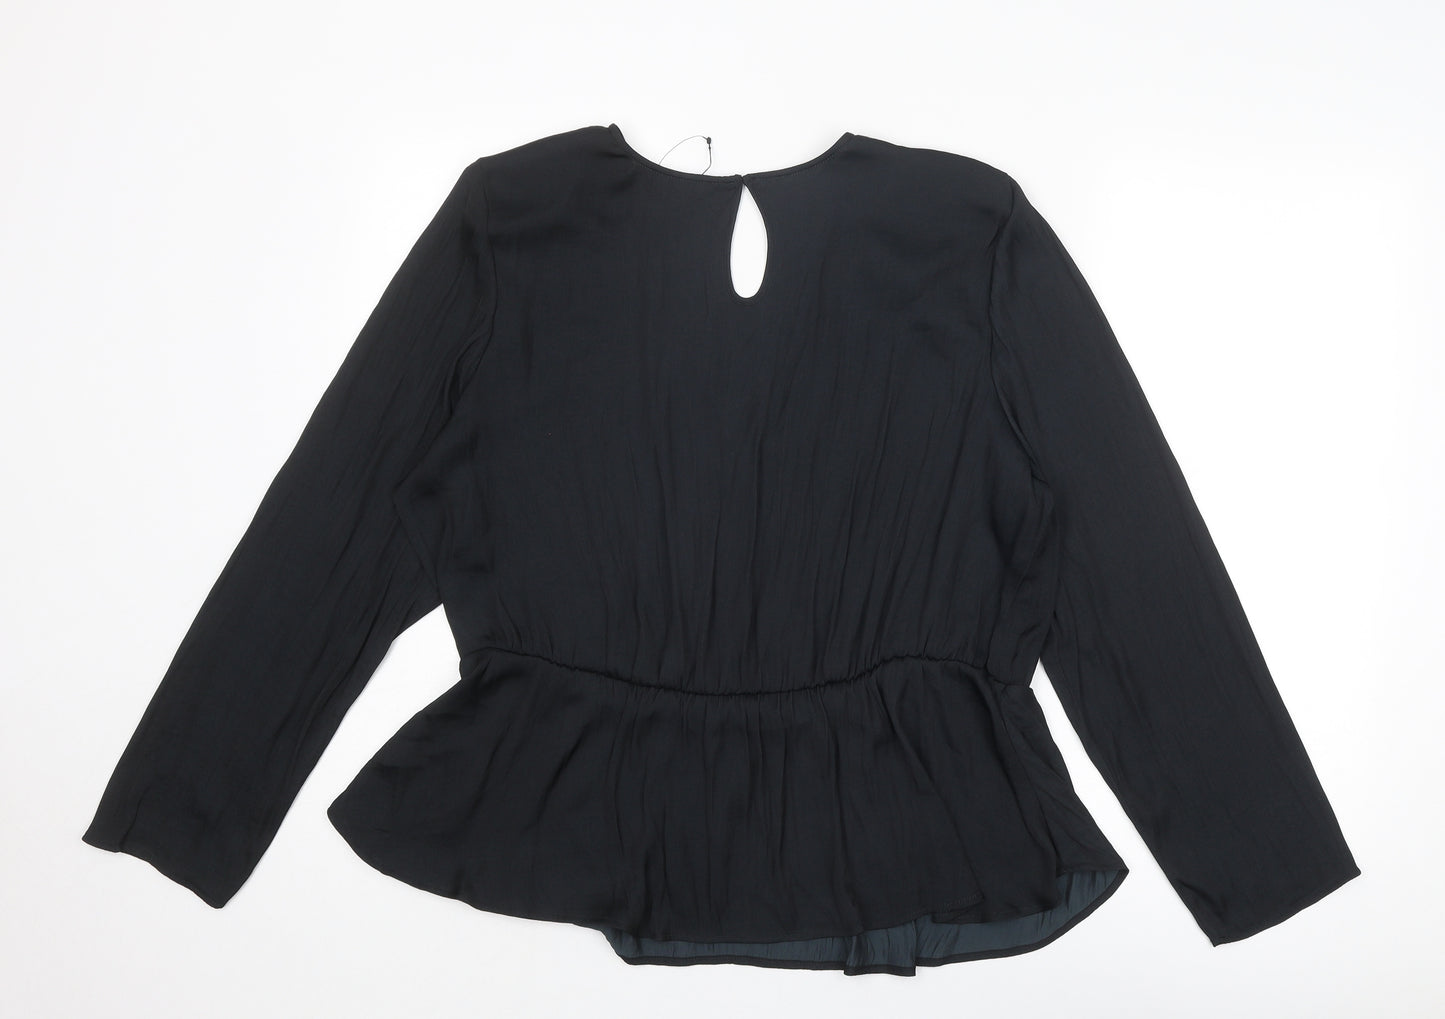 Marks and Spencer Womens Black Polyester Basic Blouse Size 20 V-Neck - Peplum